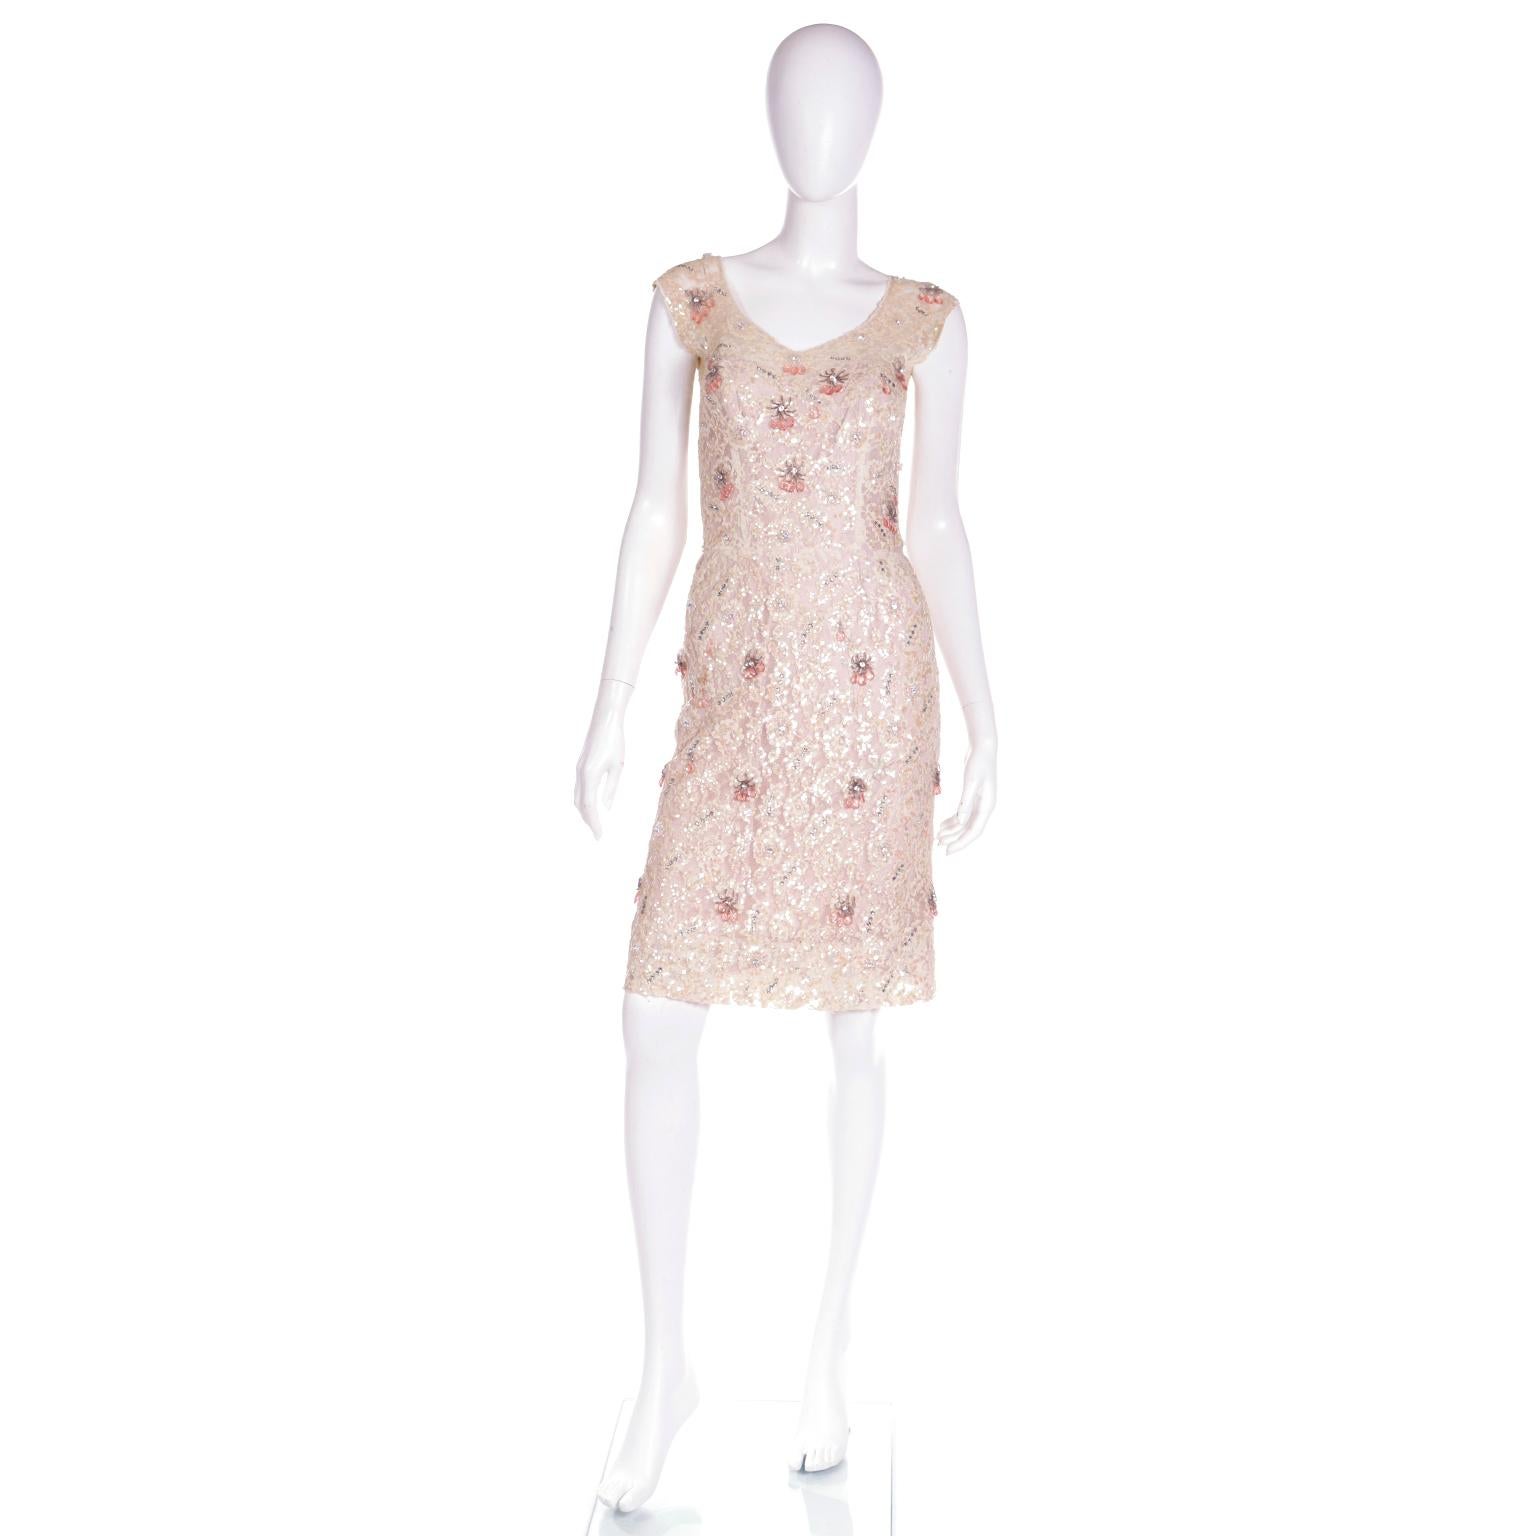 Il s'agit d'une superbe robe à déhanchement de Karen Stark pour Harvey Berin, datant de la fin des années 1950, avec une doublure en satin rose sous une superposition de dentelle. La dentelle crème est ornée de strass et de paillettes irisées d'une